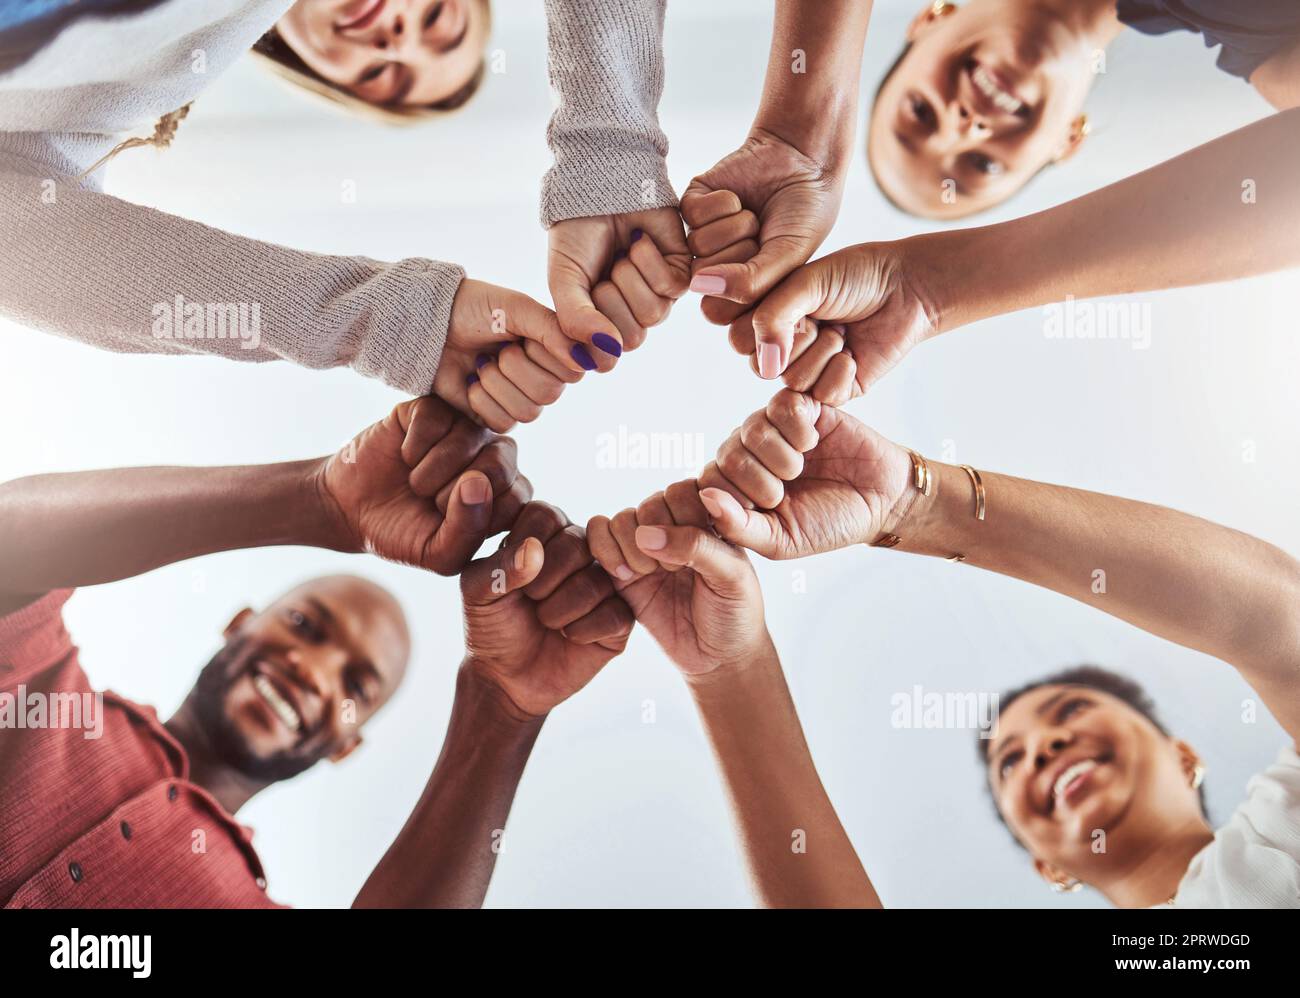 Teamwork, Einheit und Hände oder Faust für Unterstützung, Vertrauen und Gemeinschaft unter blauem Himmel. In der Gruppe „Diversity“ stehen Männer und Frauen zusammen, um Teamarbeit, Zusammenarbeit und Hilfe beim Teamaufbau zu leisten Stockfoto